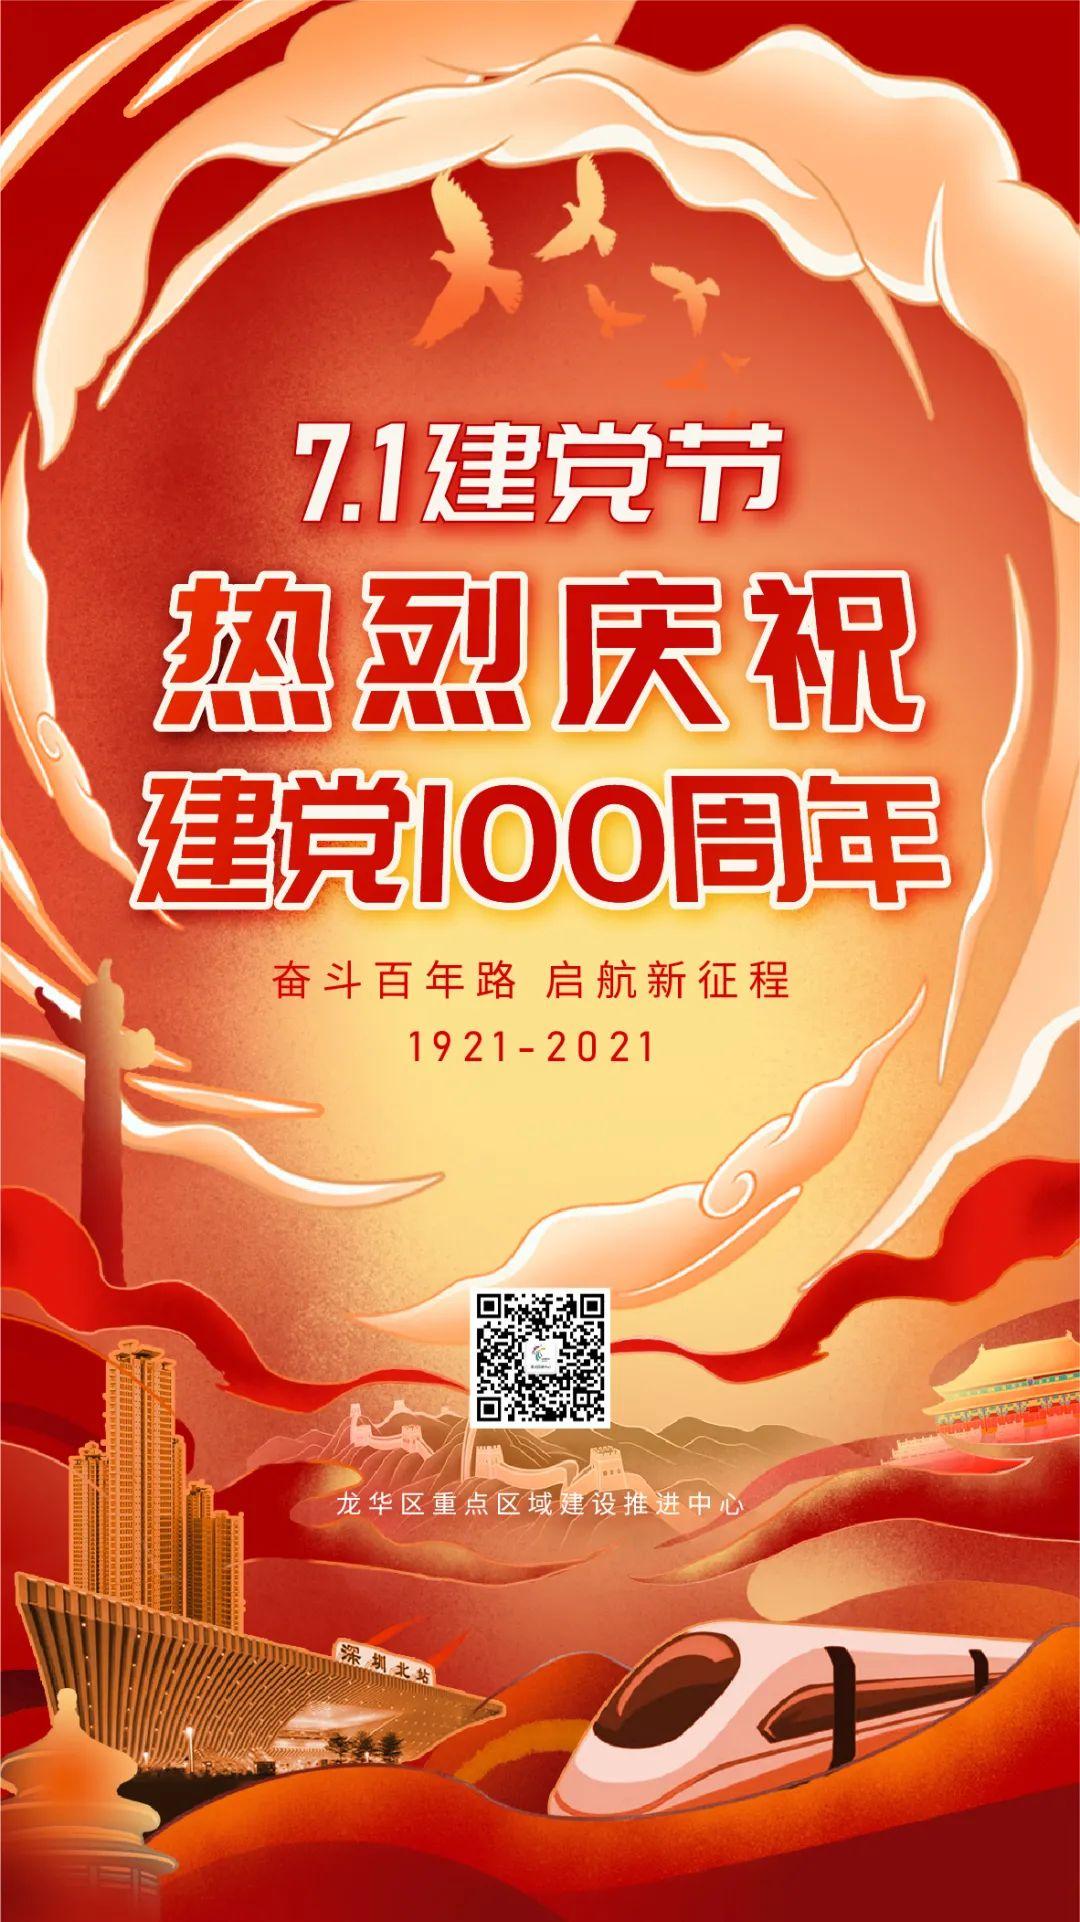 争当建设中国特色社会主义先行示范尖兵,为庆祝建党100周年交出一份